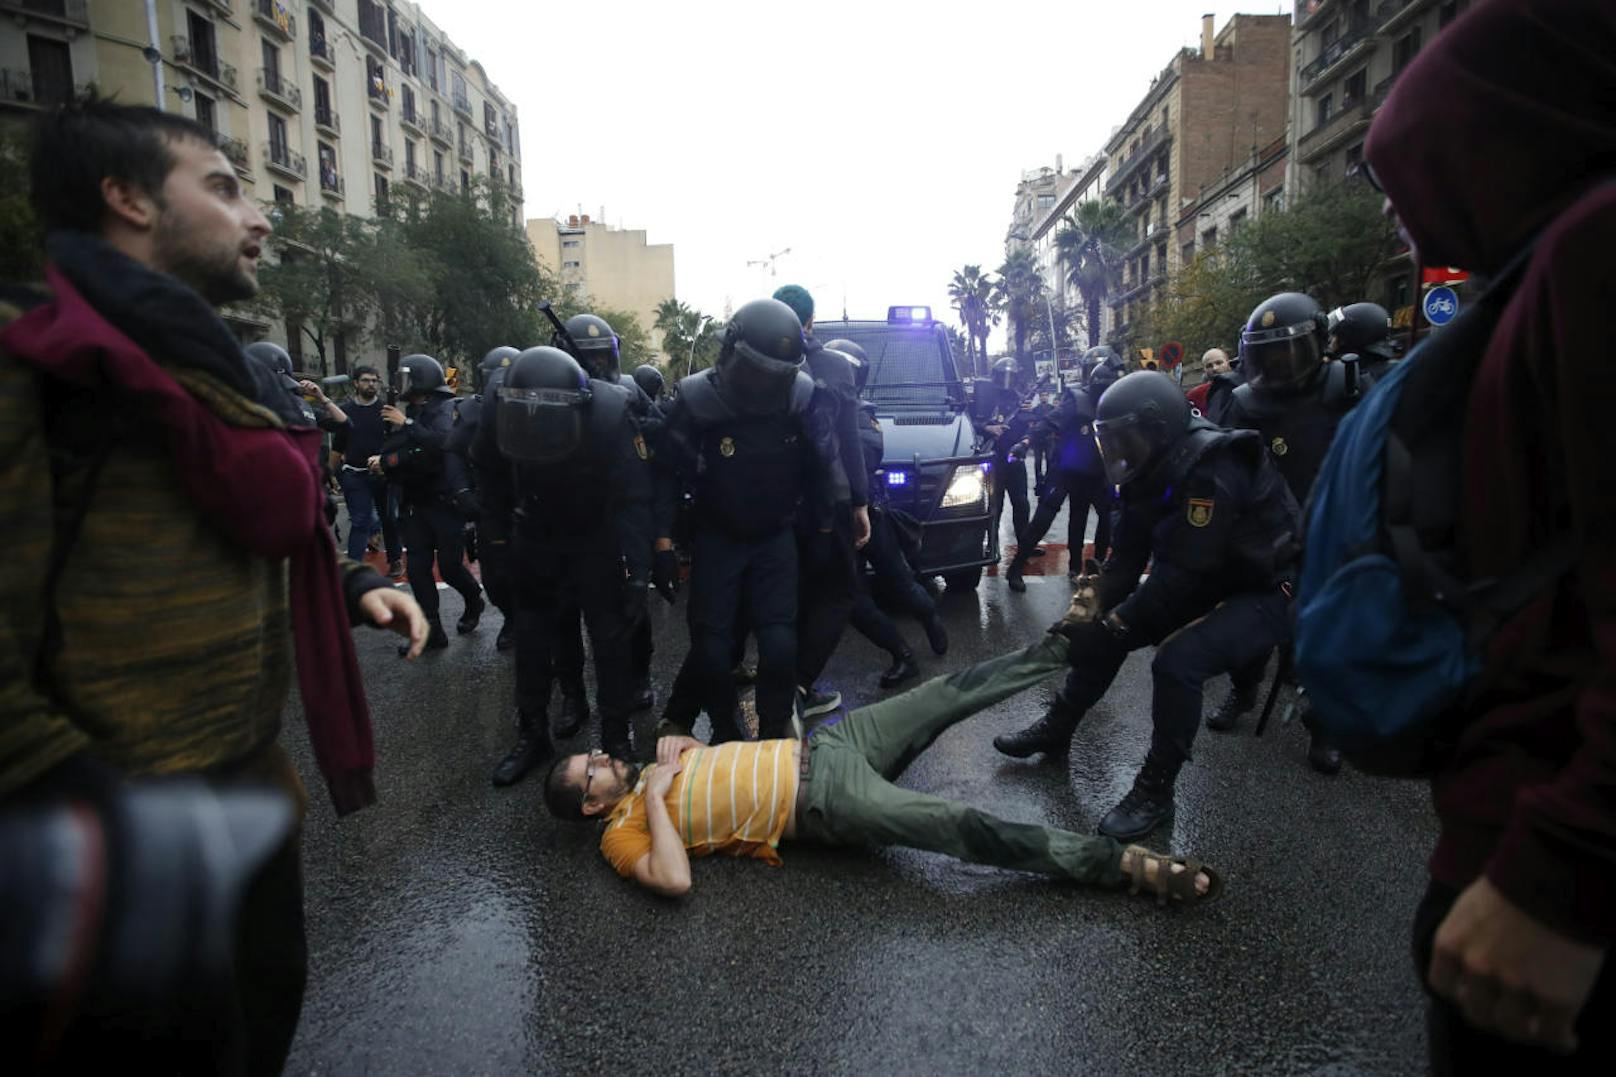 Die Katalanen wollen über ihre Unabhängigkeit abstimmen: Die spanische Polizei spricht von einem "illegalen Referendum" und geht gewaltsam gegen die Wähler vor (1. Oktober 2017).